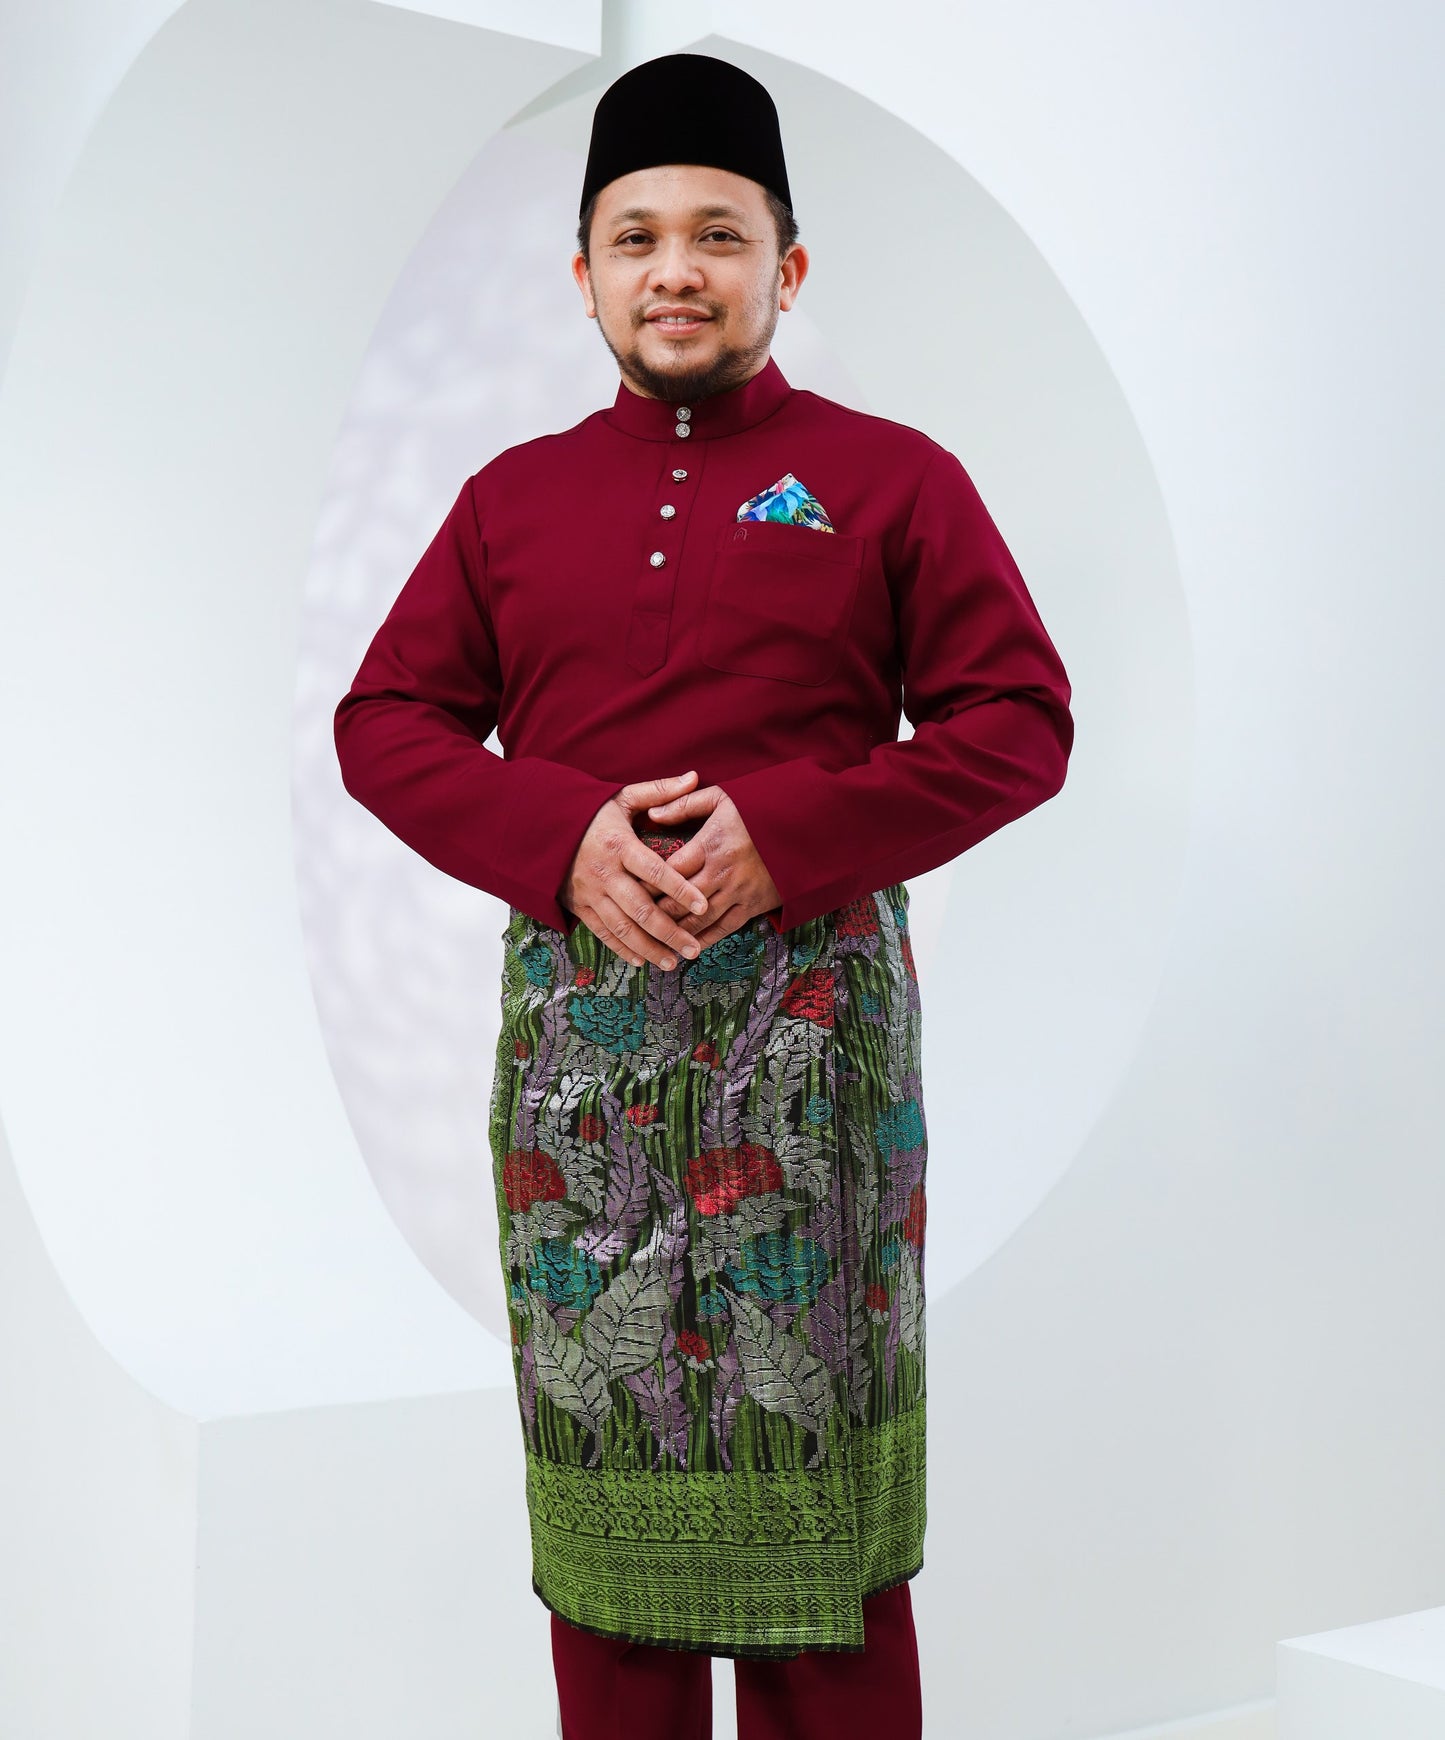 Baju Melayu Haseki - Maroon